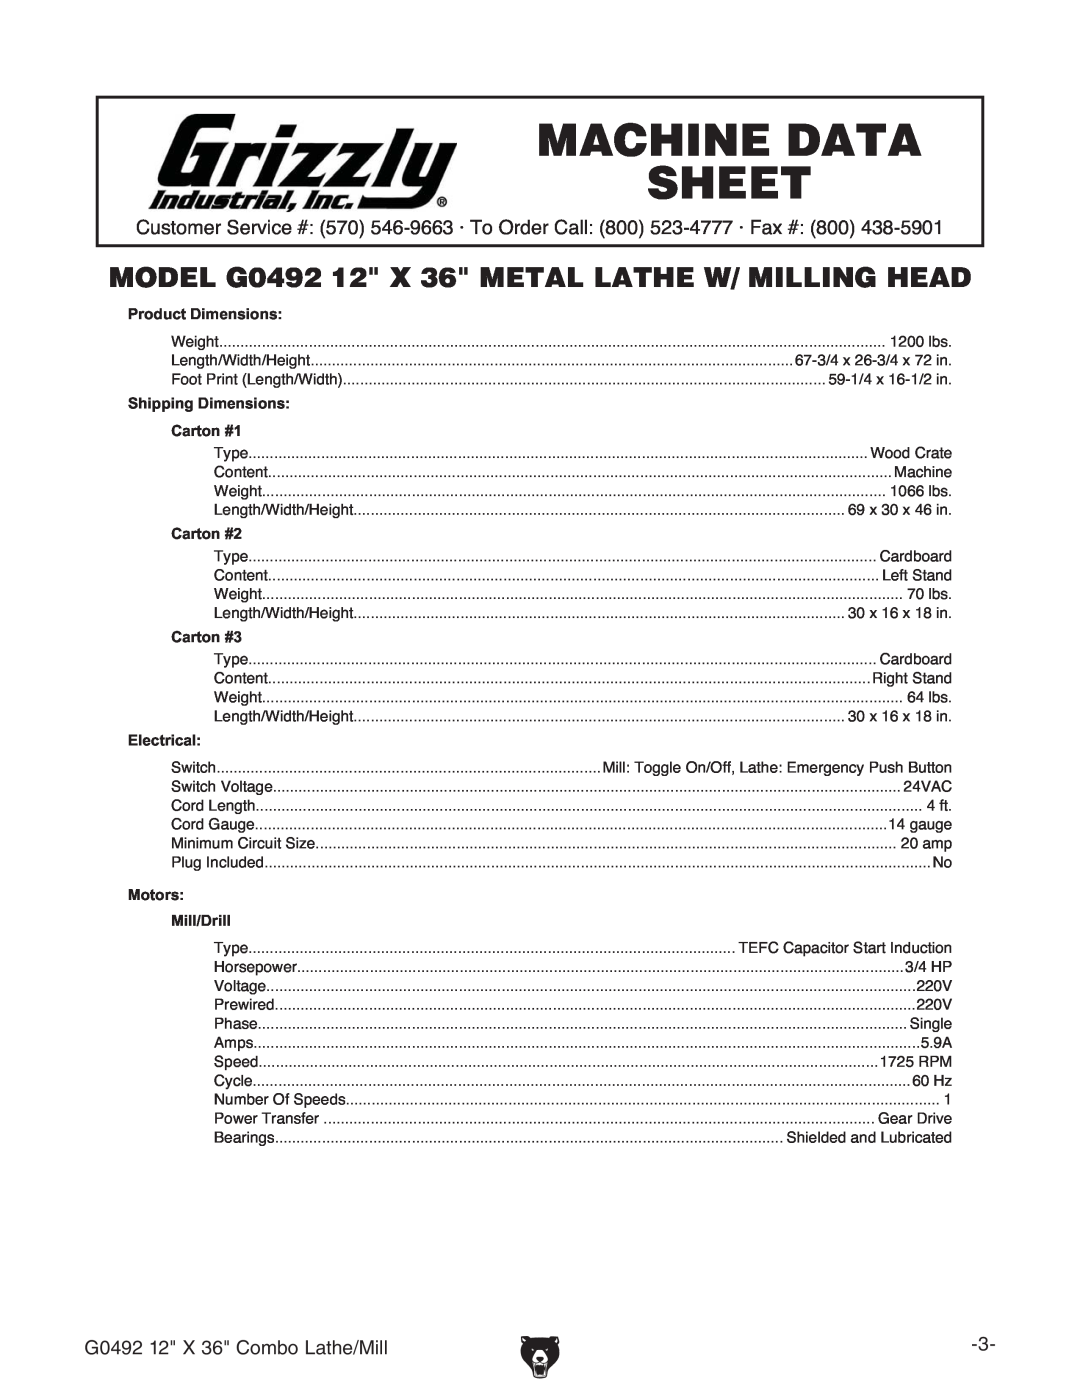 Grizzly Machine Data Sheet, MODEL G0492 12 X 36 METAL LATHE W/ MILLING HEAD, &M+8dbWdAViZ$Baa, EgdYjXi9bZchdch 